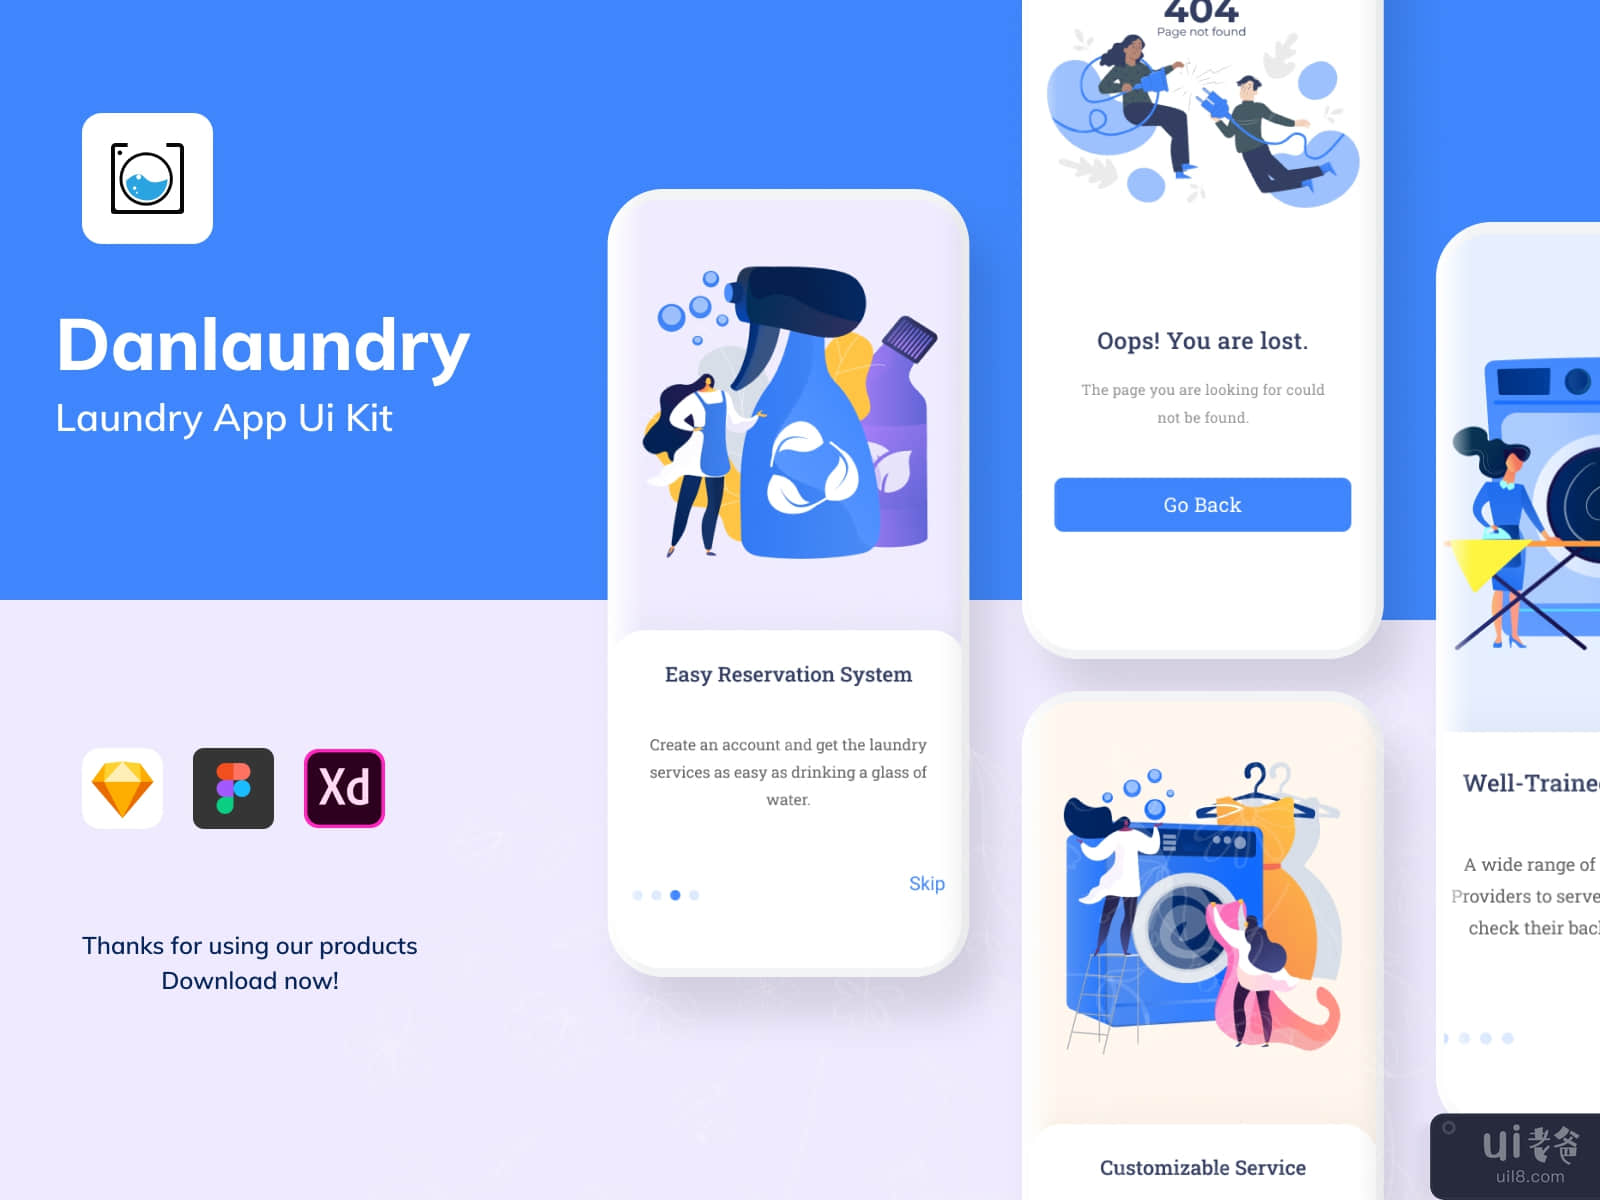 Danlaundry App Ui Kit #1